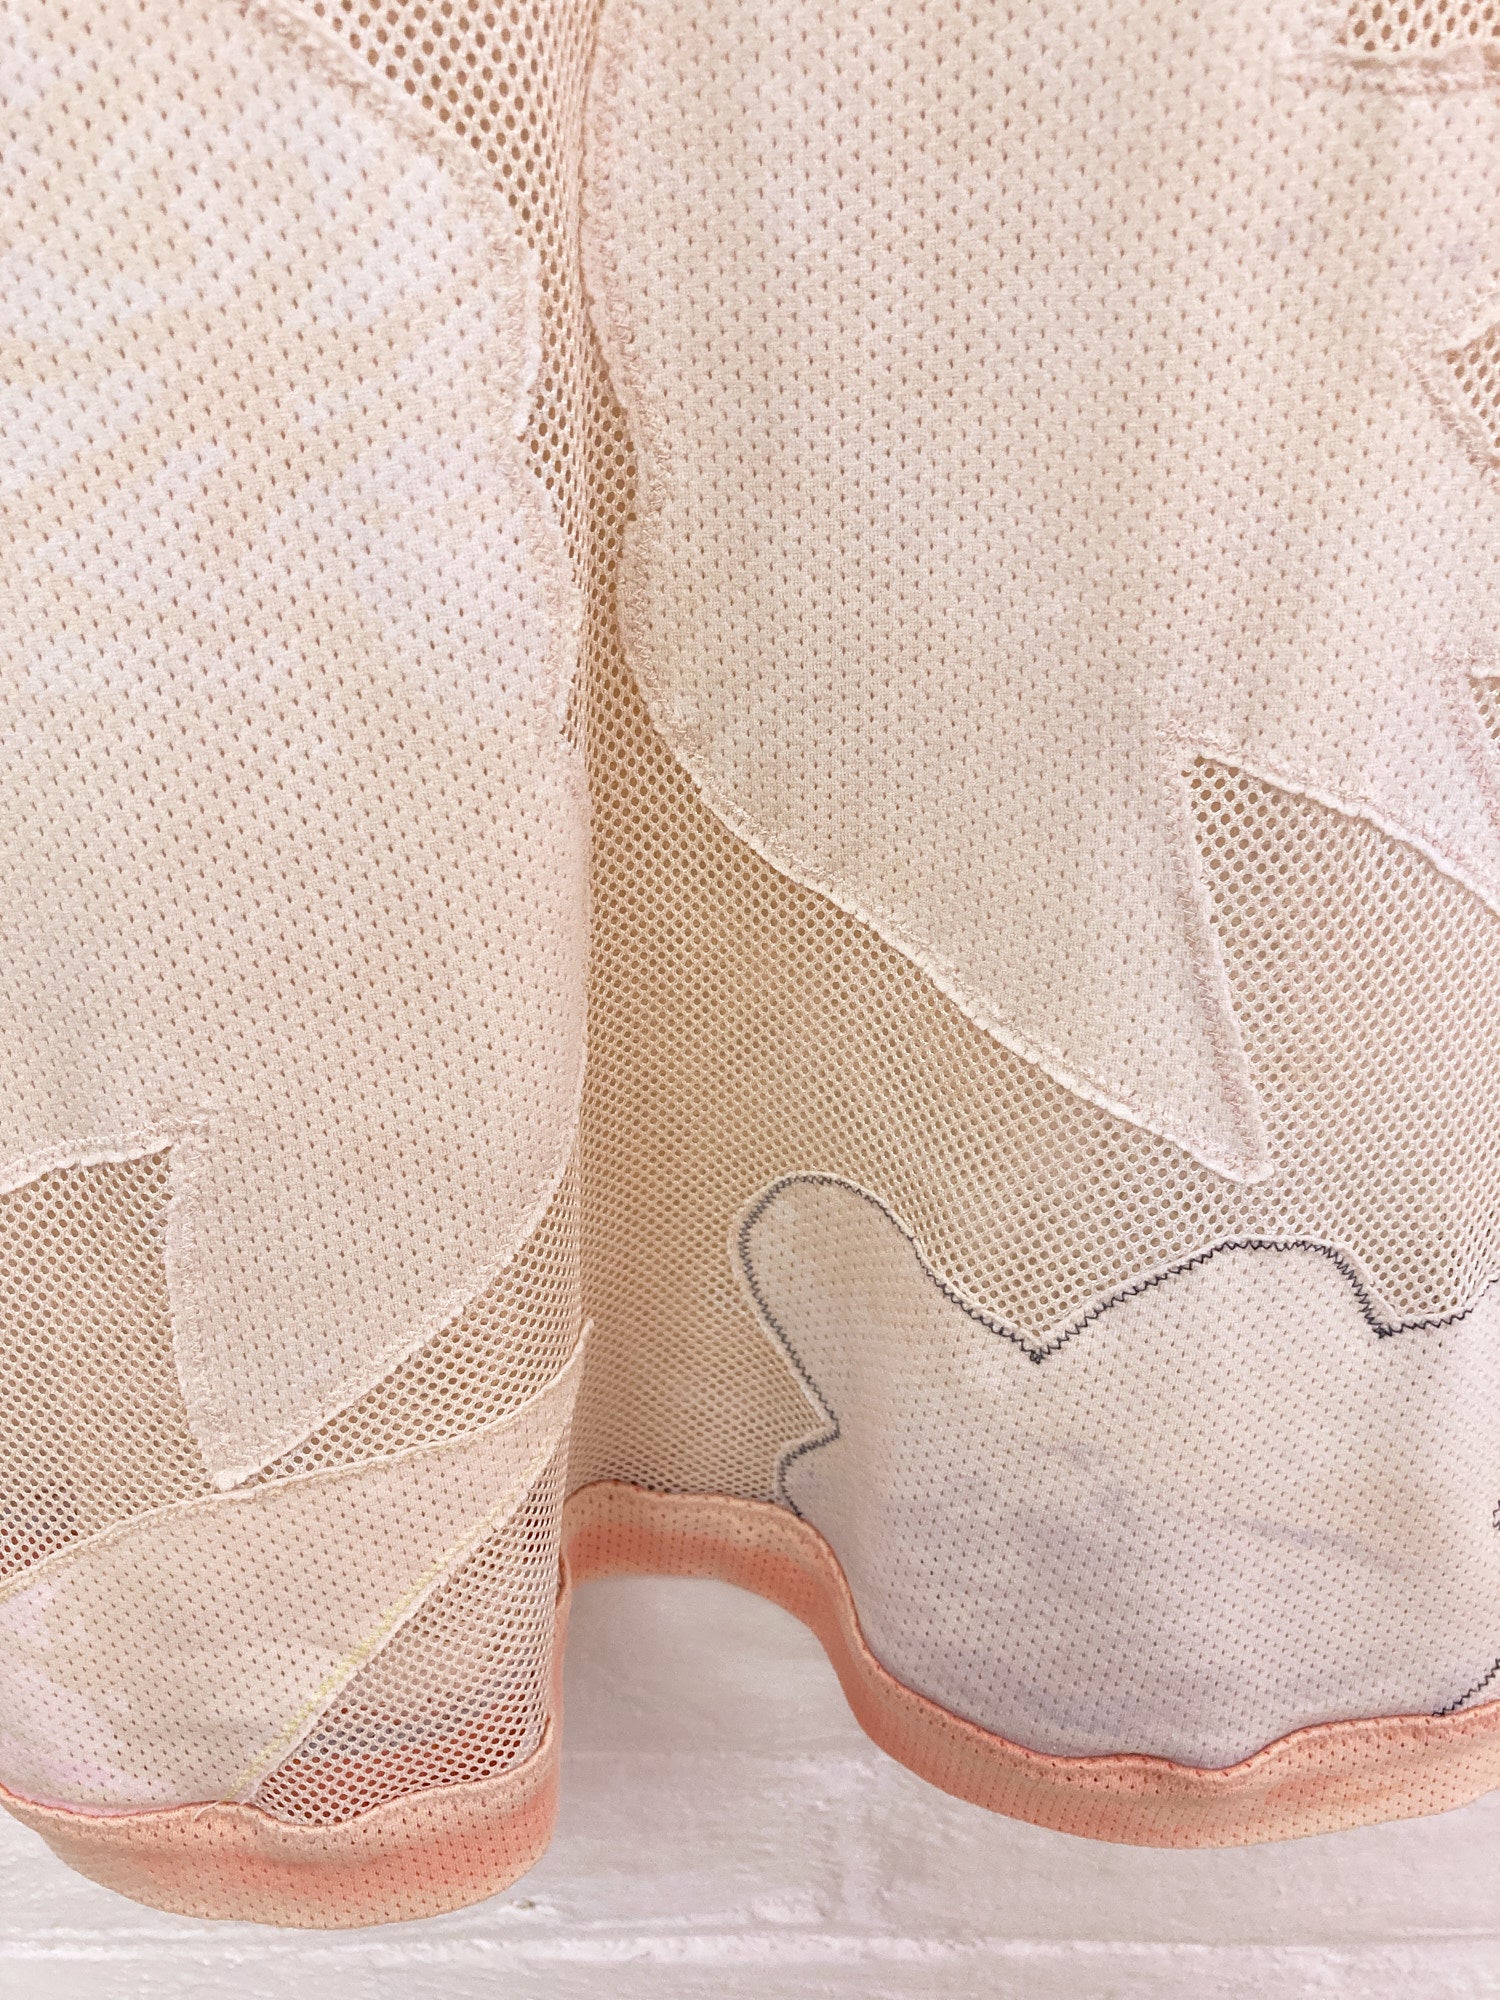 Yoshiki Hishinuma mottled cloud and moon motif sheer mesh t-shirt - womens M S